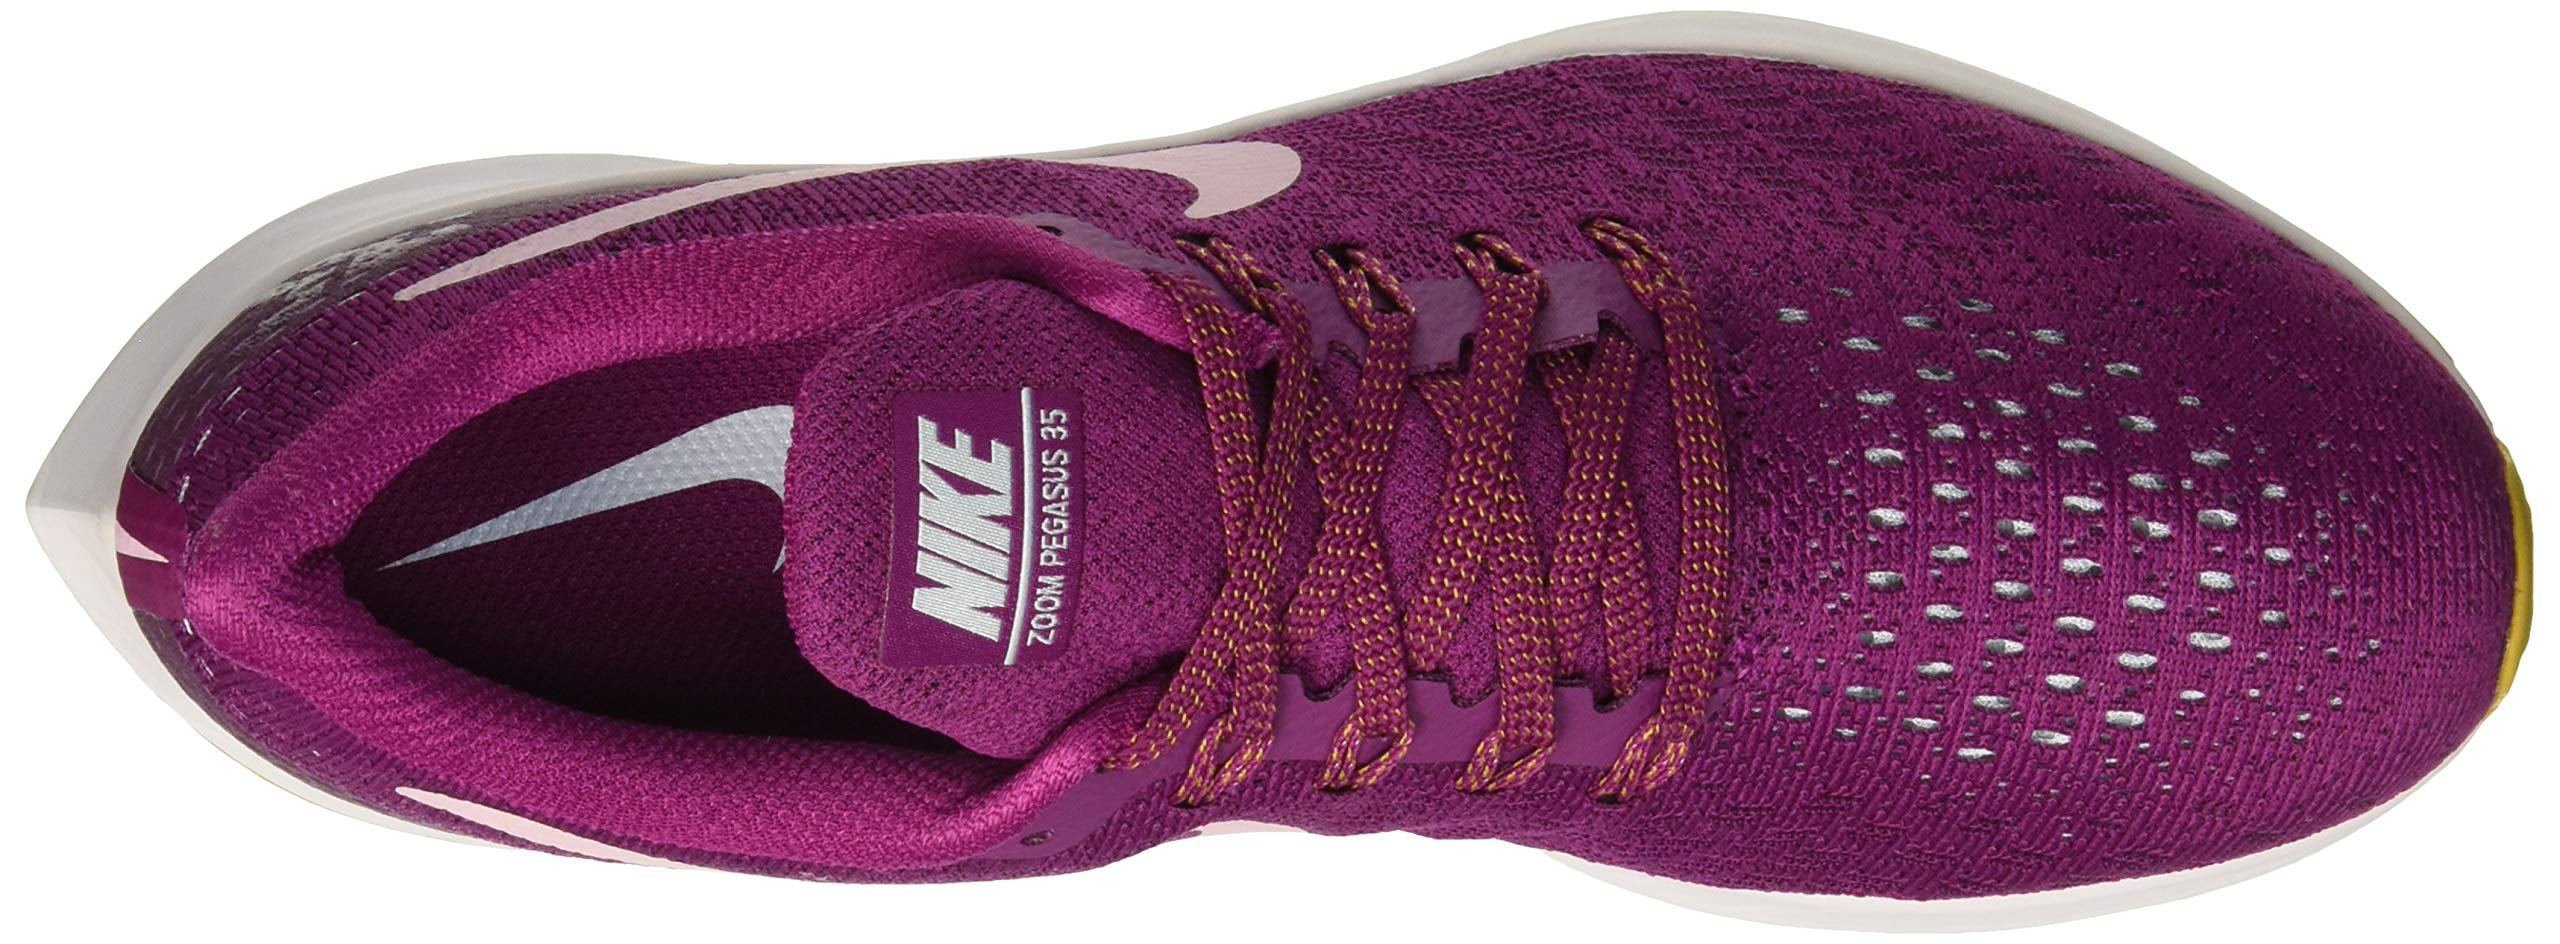 Nike 942855-606: Air Zoom Pegasus 35 True Chalk Shoe (8 B(M) US Women) - Walmart.com